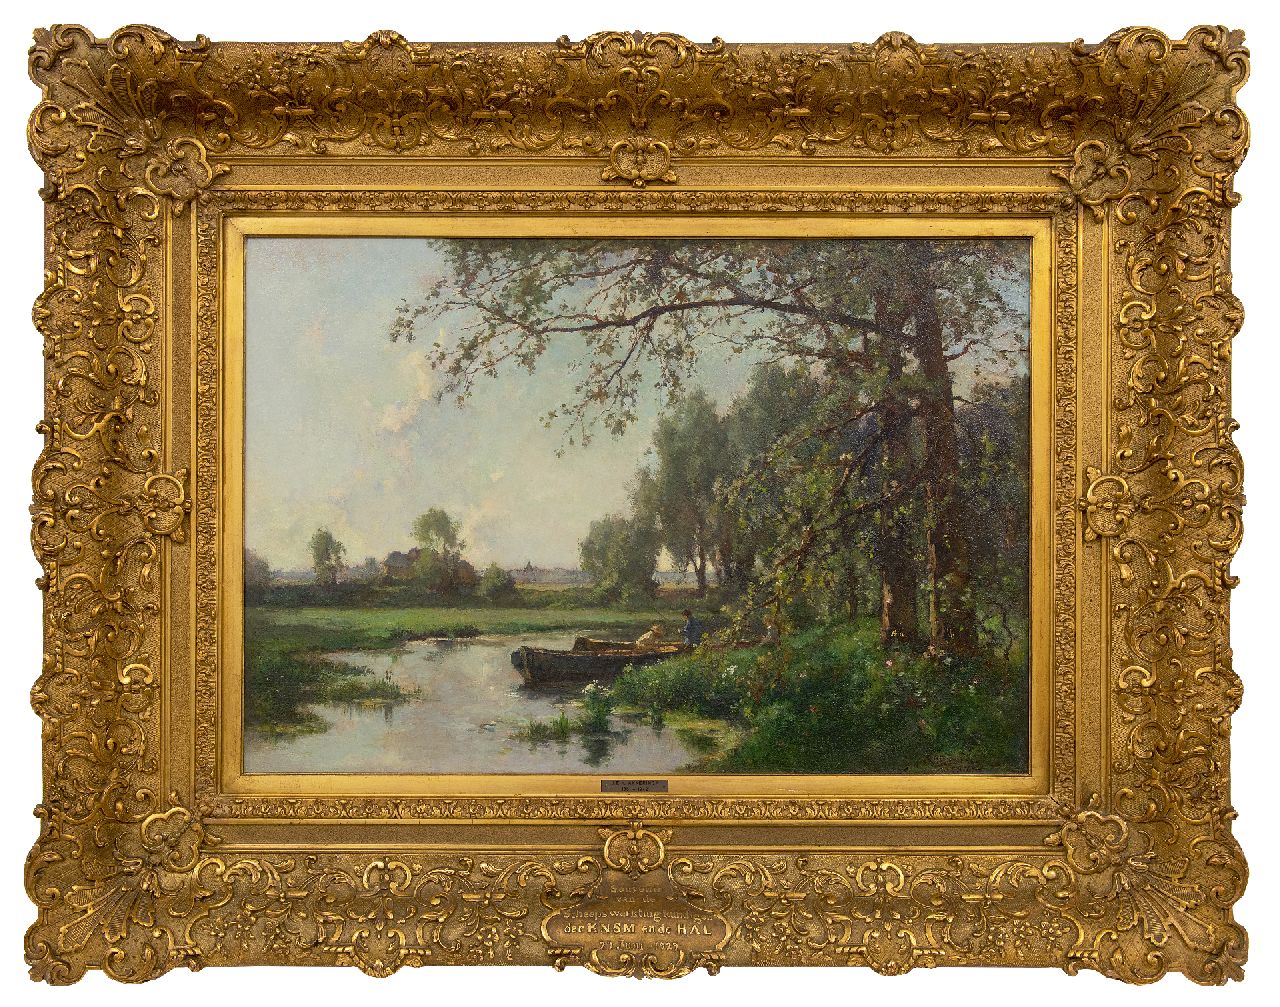 Akkeringa J.E.H.  | 'Johannes Evert' Hendrik Akkeringa | Schilderijen te koop aangeboden | Landschap met twee vissers in een bootje, olieverf op doek 46,4 x 67,4 cm, gesigneerd rechtsonder